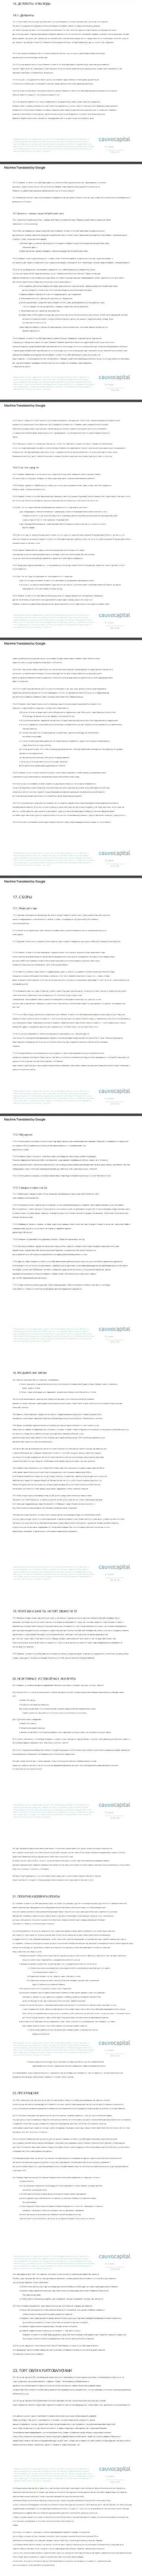 Часть 3 клиентского соглашения Форекс-дилера CauvoCapital